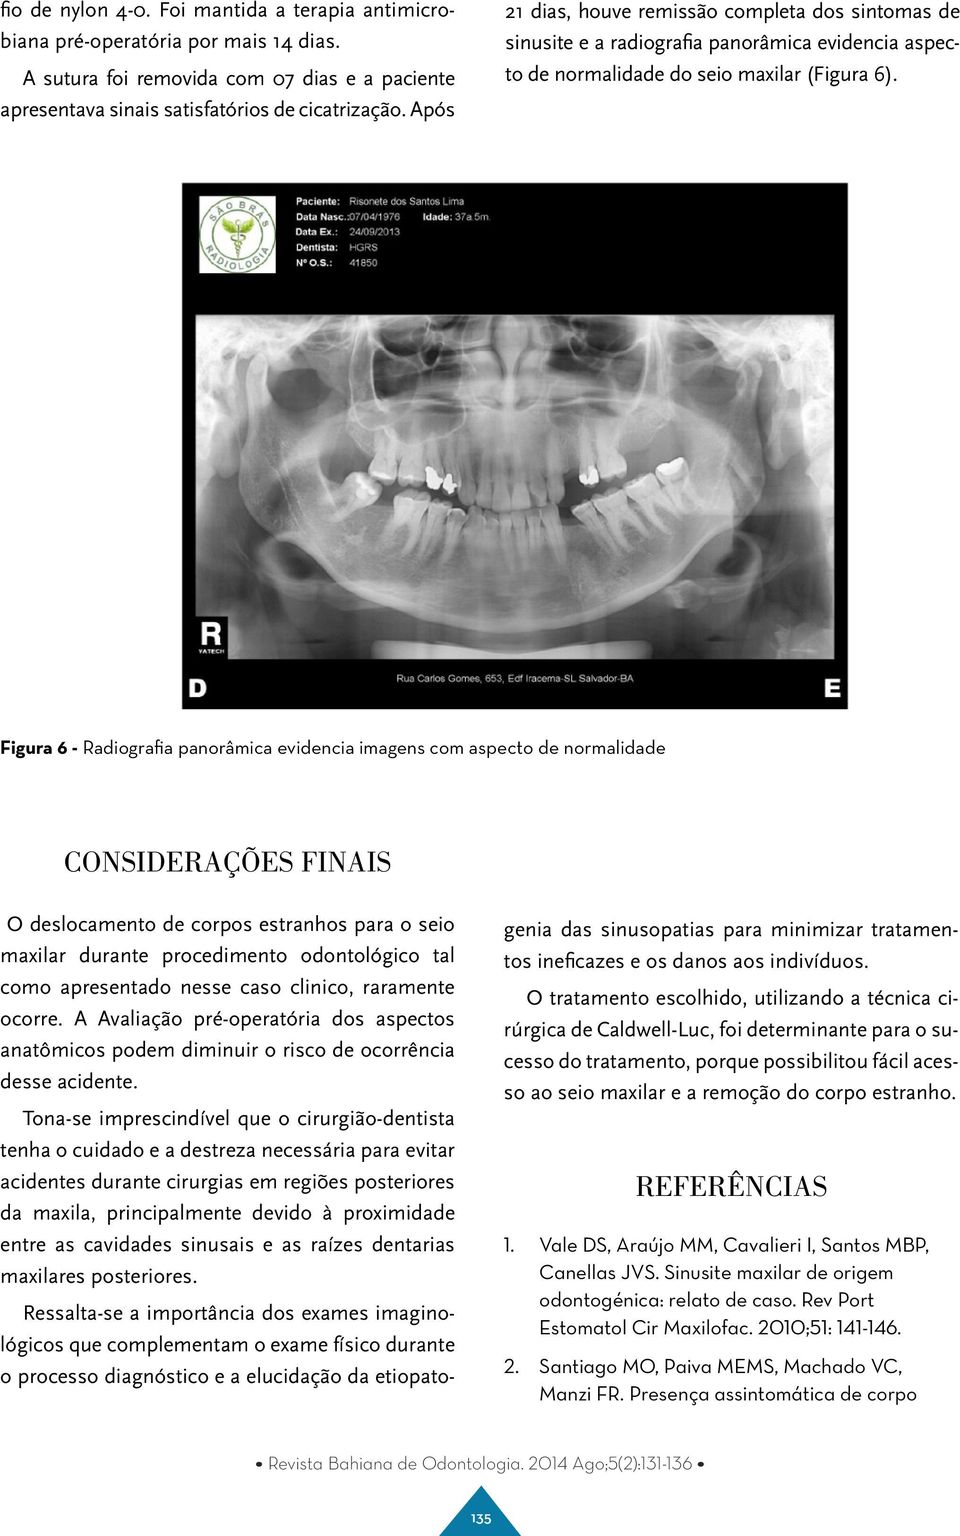 Figura 6 - Radiografia panorâmica evidencia imagens com aspecto de normalidade CONSIDERAÇÕES FINAIS O deslocamento de corpos estranhos para o seio maxilar durante procedimento odontológico tal como